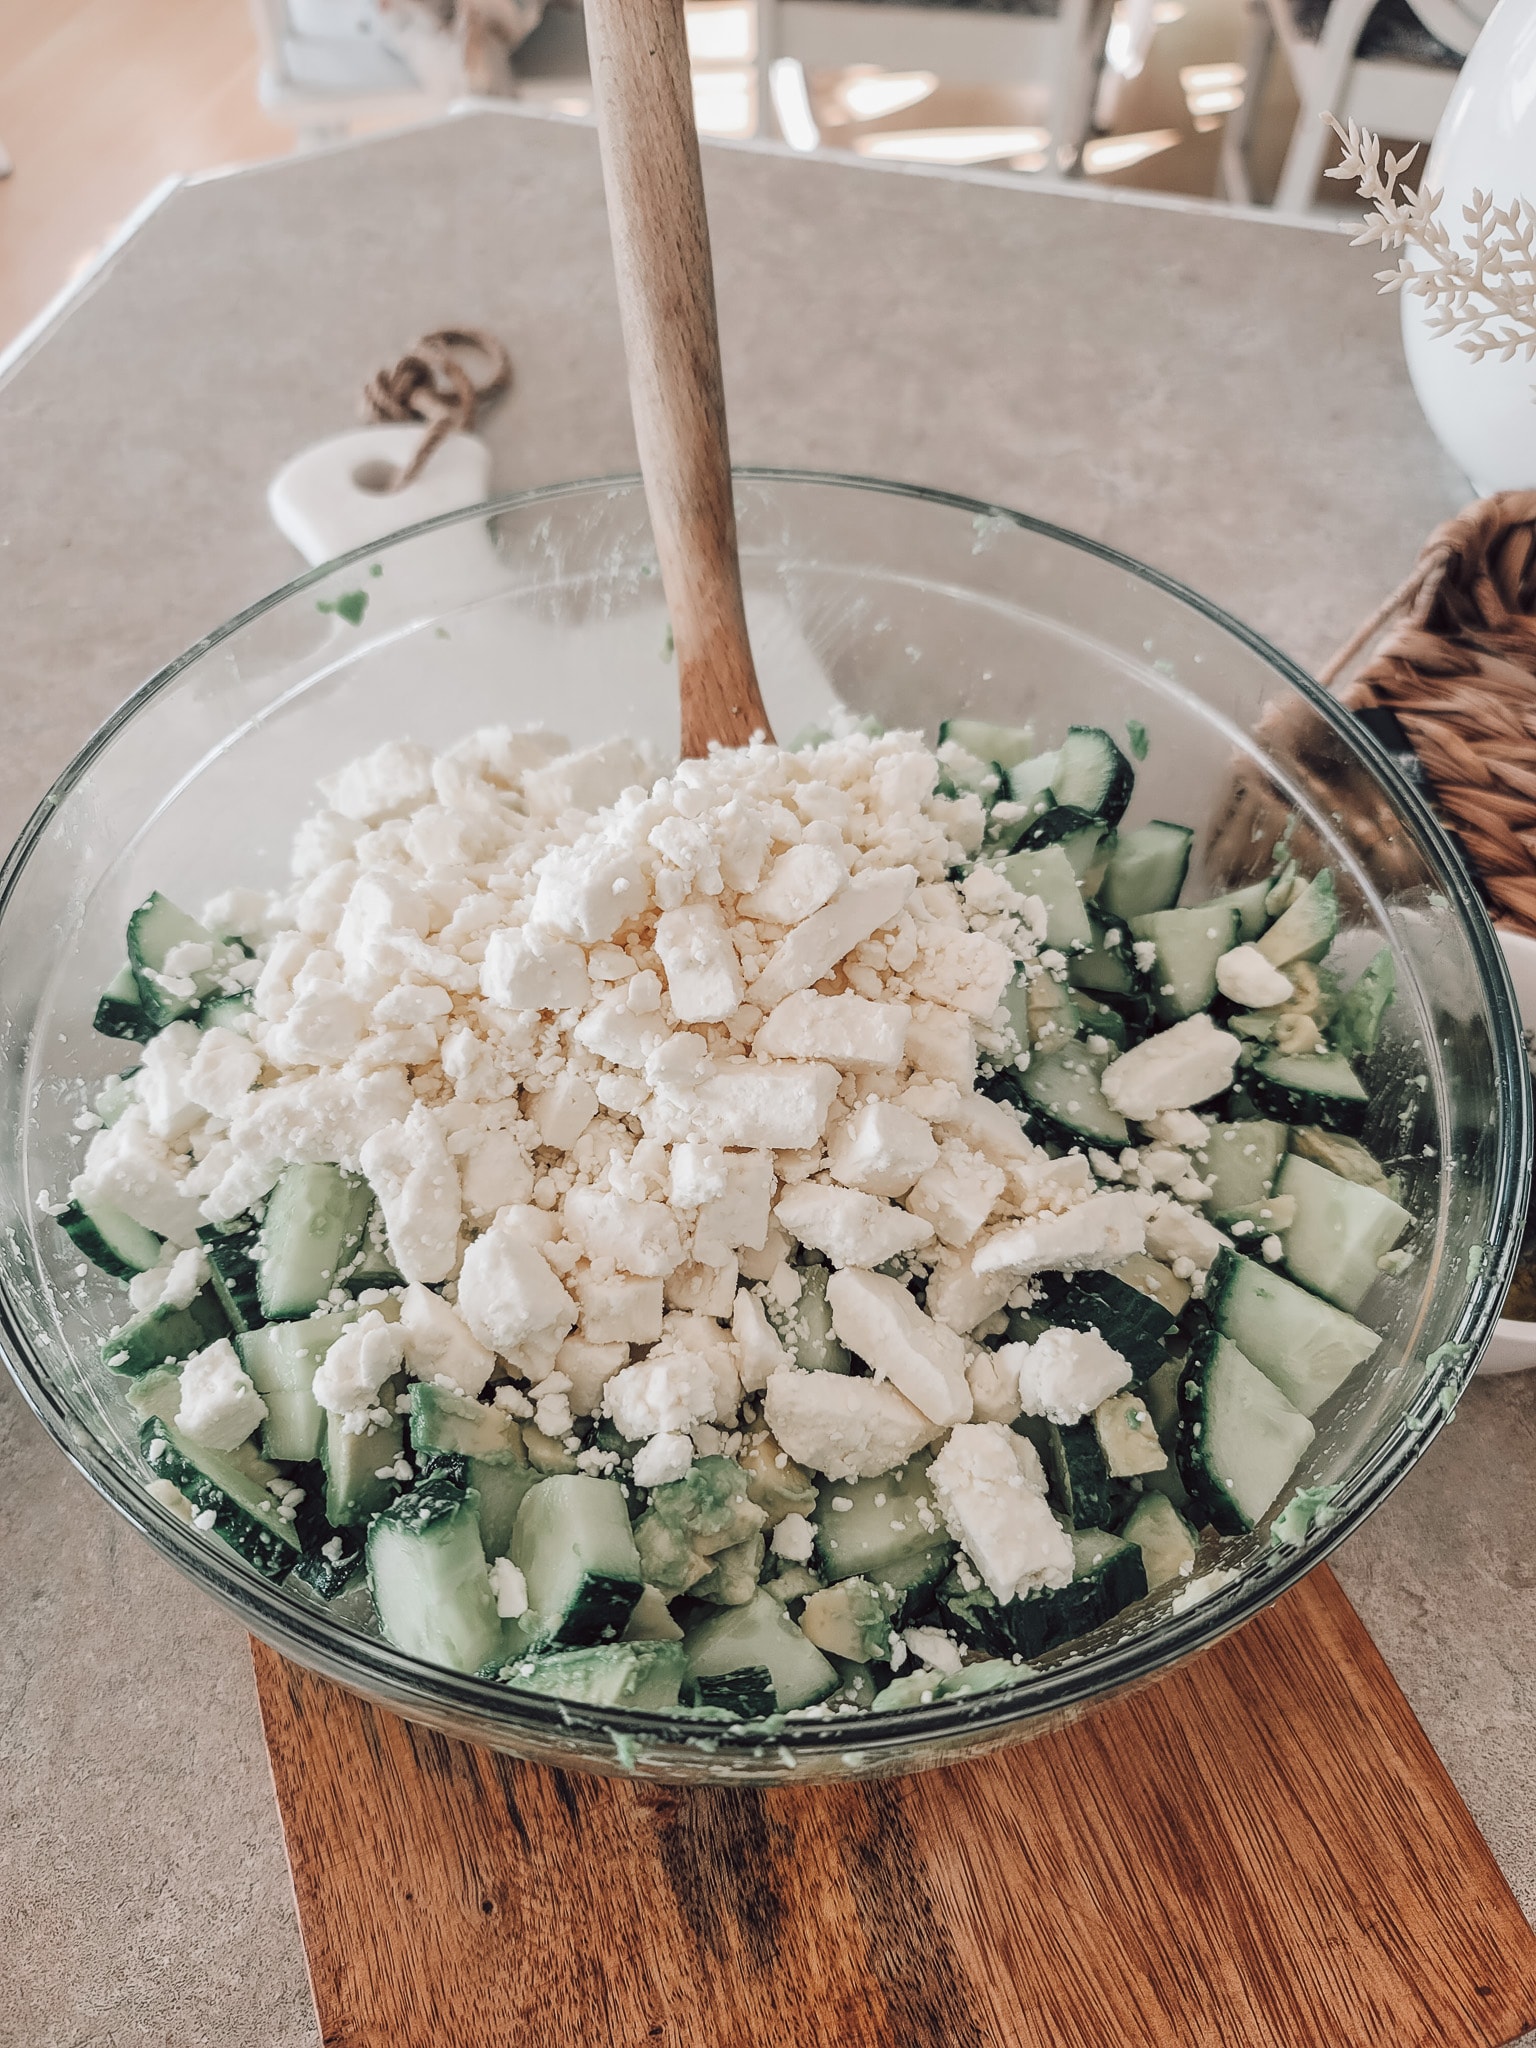 Add Feta cheese and stir again. Avocado Cucumber Salad